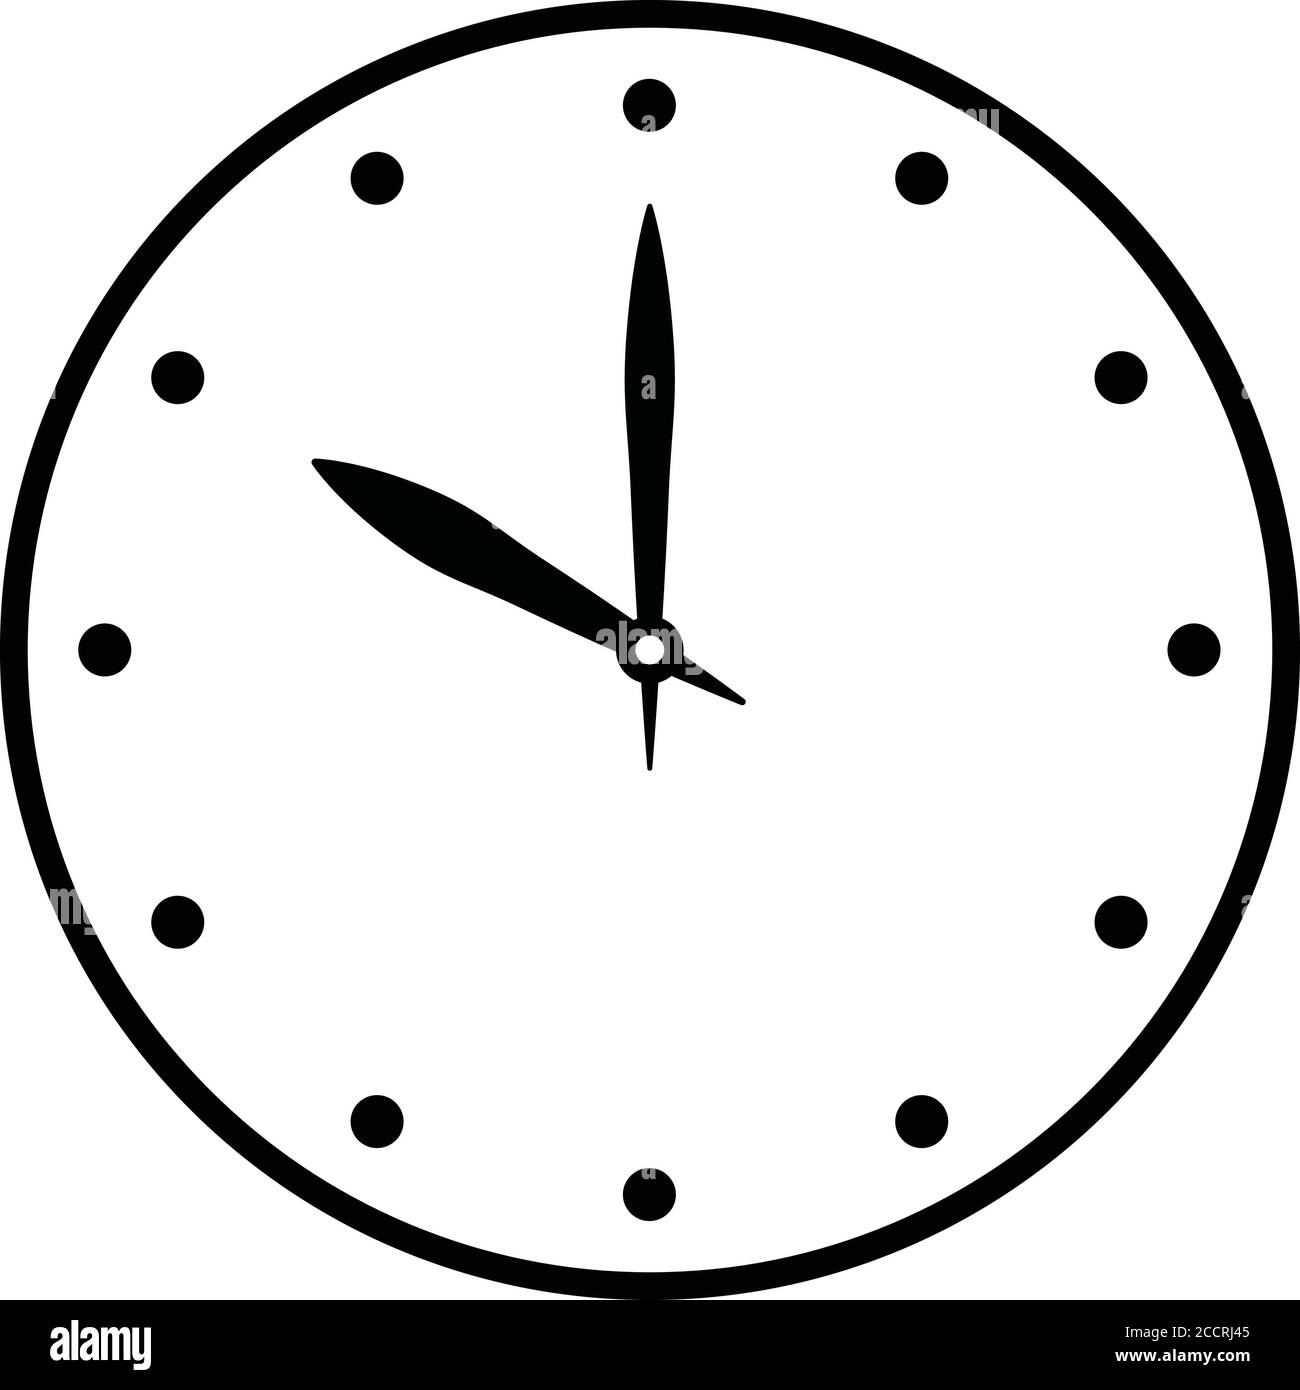 Basic clock face Banque d'images détourées - Alamy